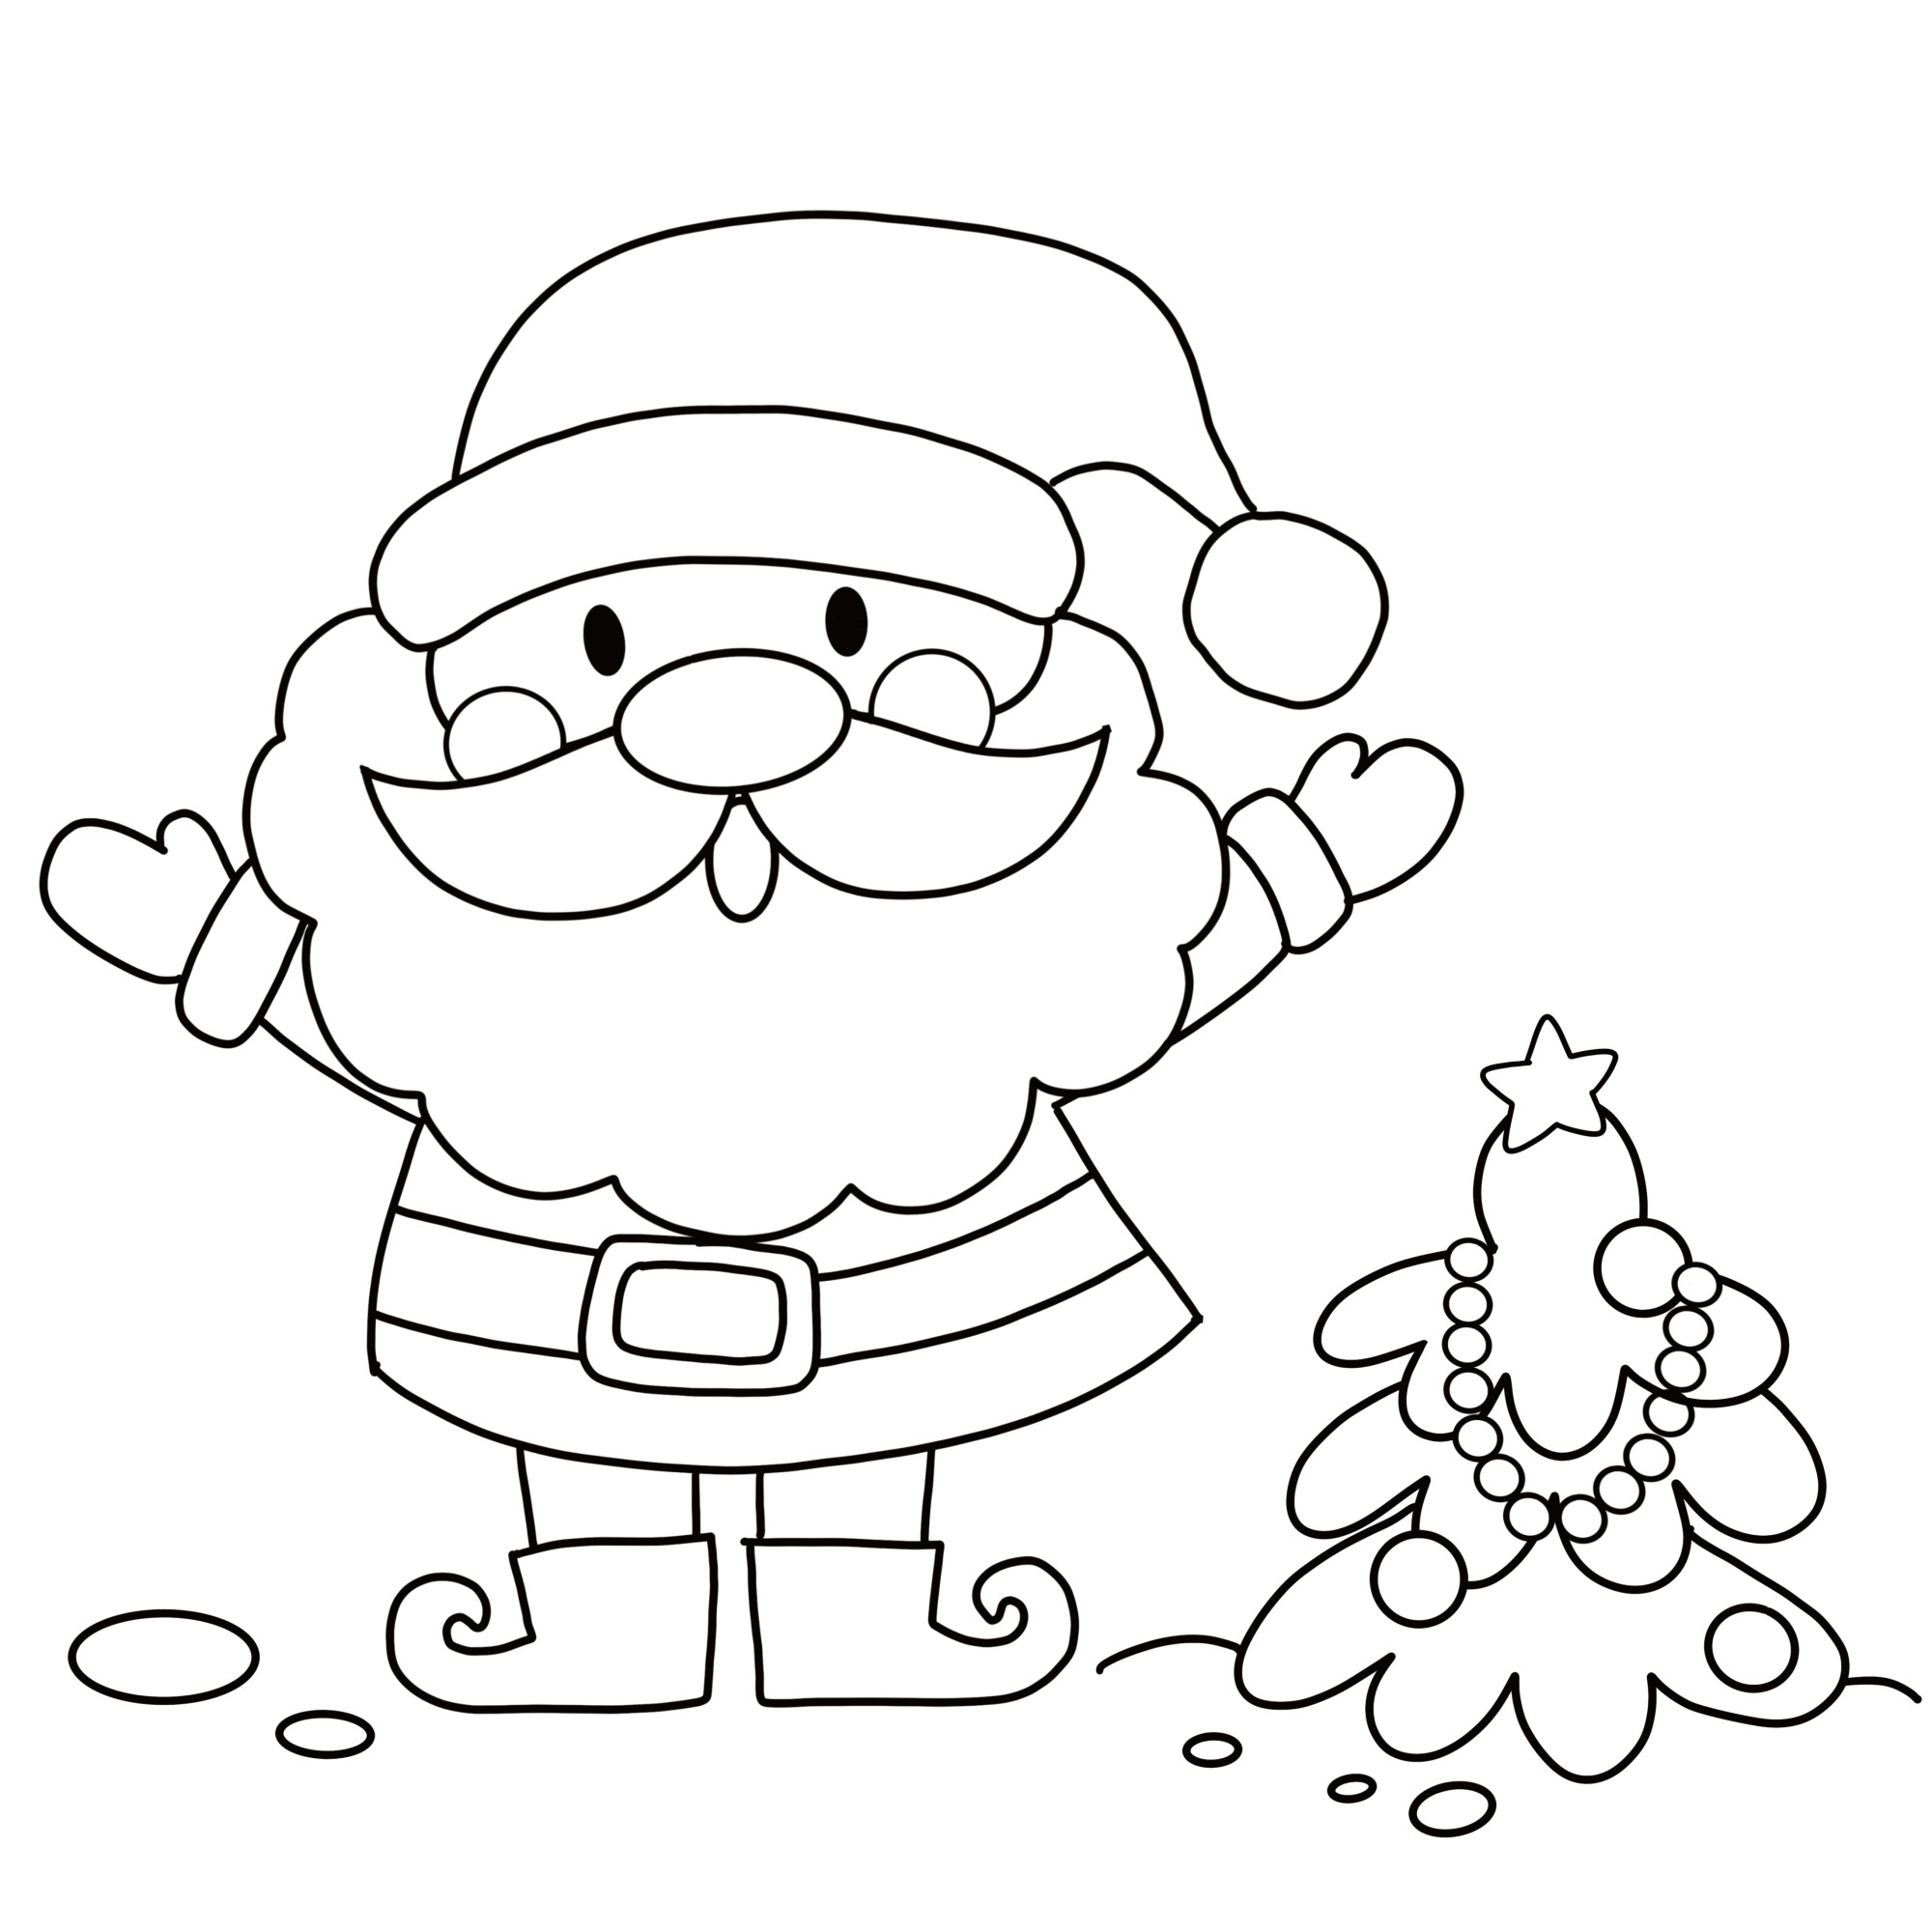 Раскраска для детей: дед мороз в шапке с поднятыми руками рядом с ёлкой